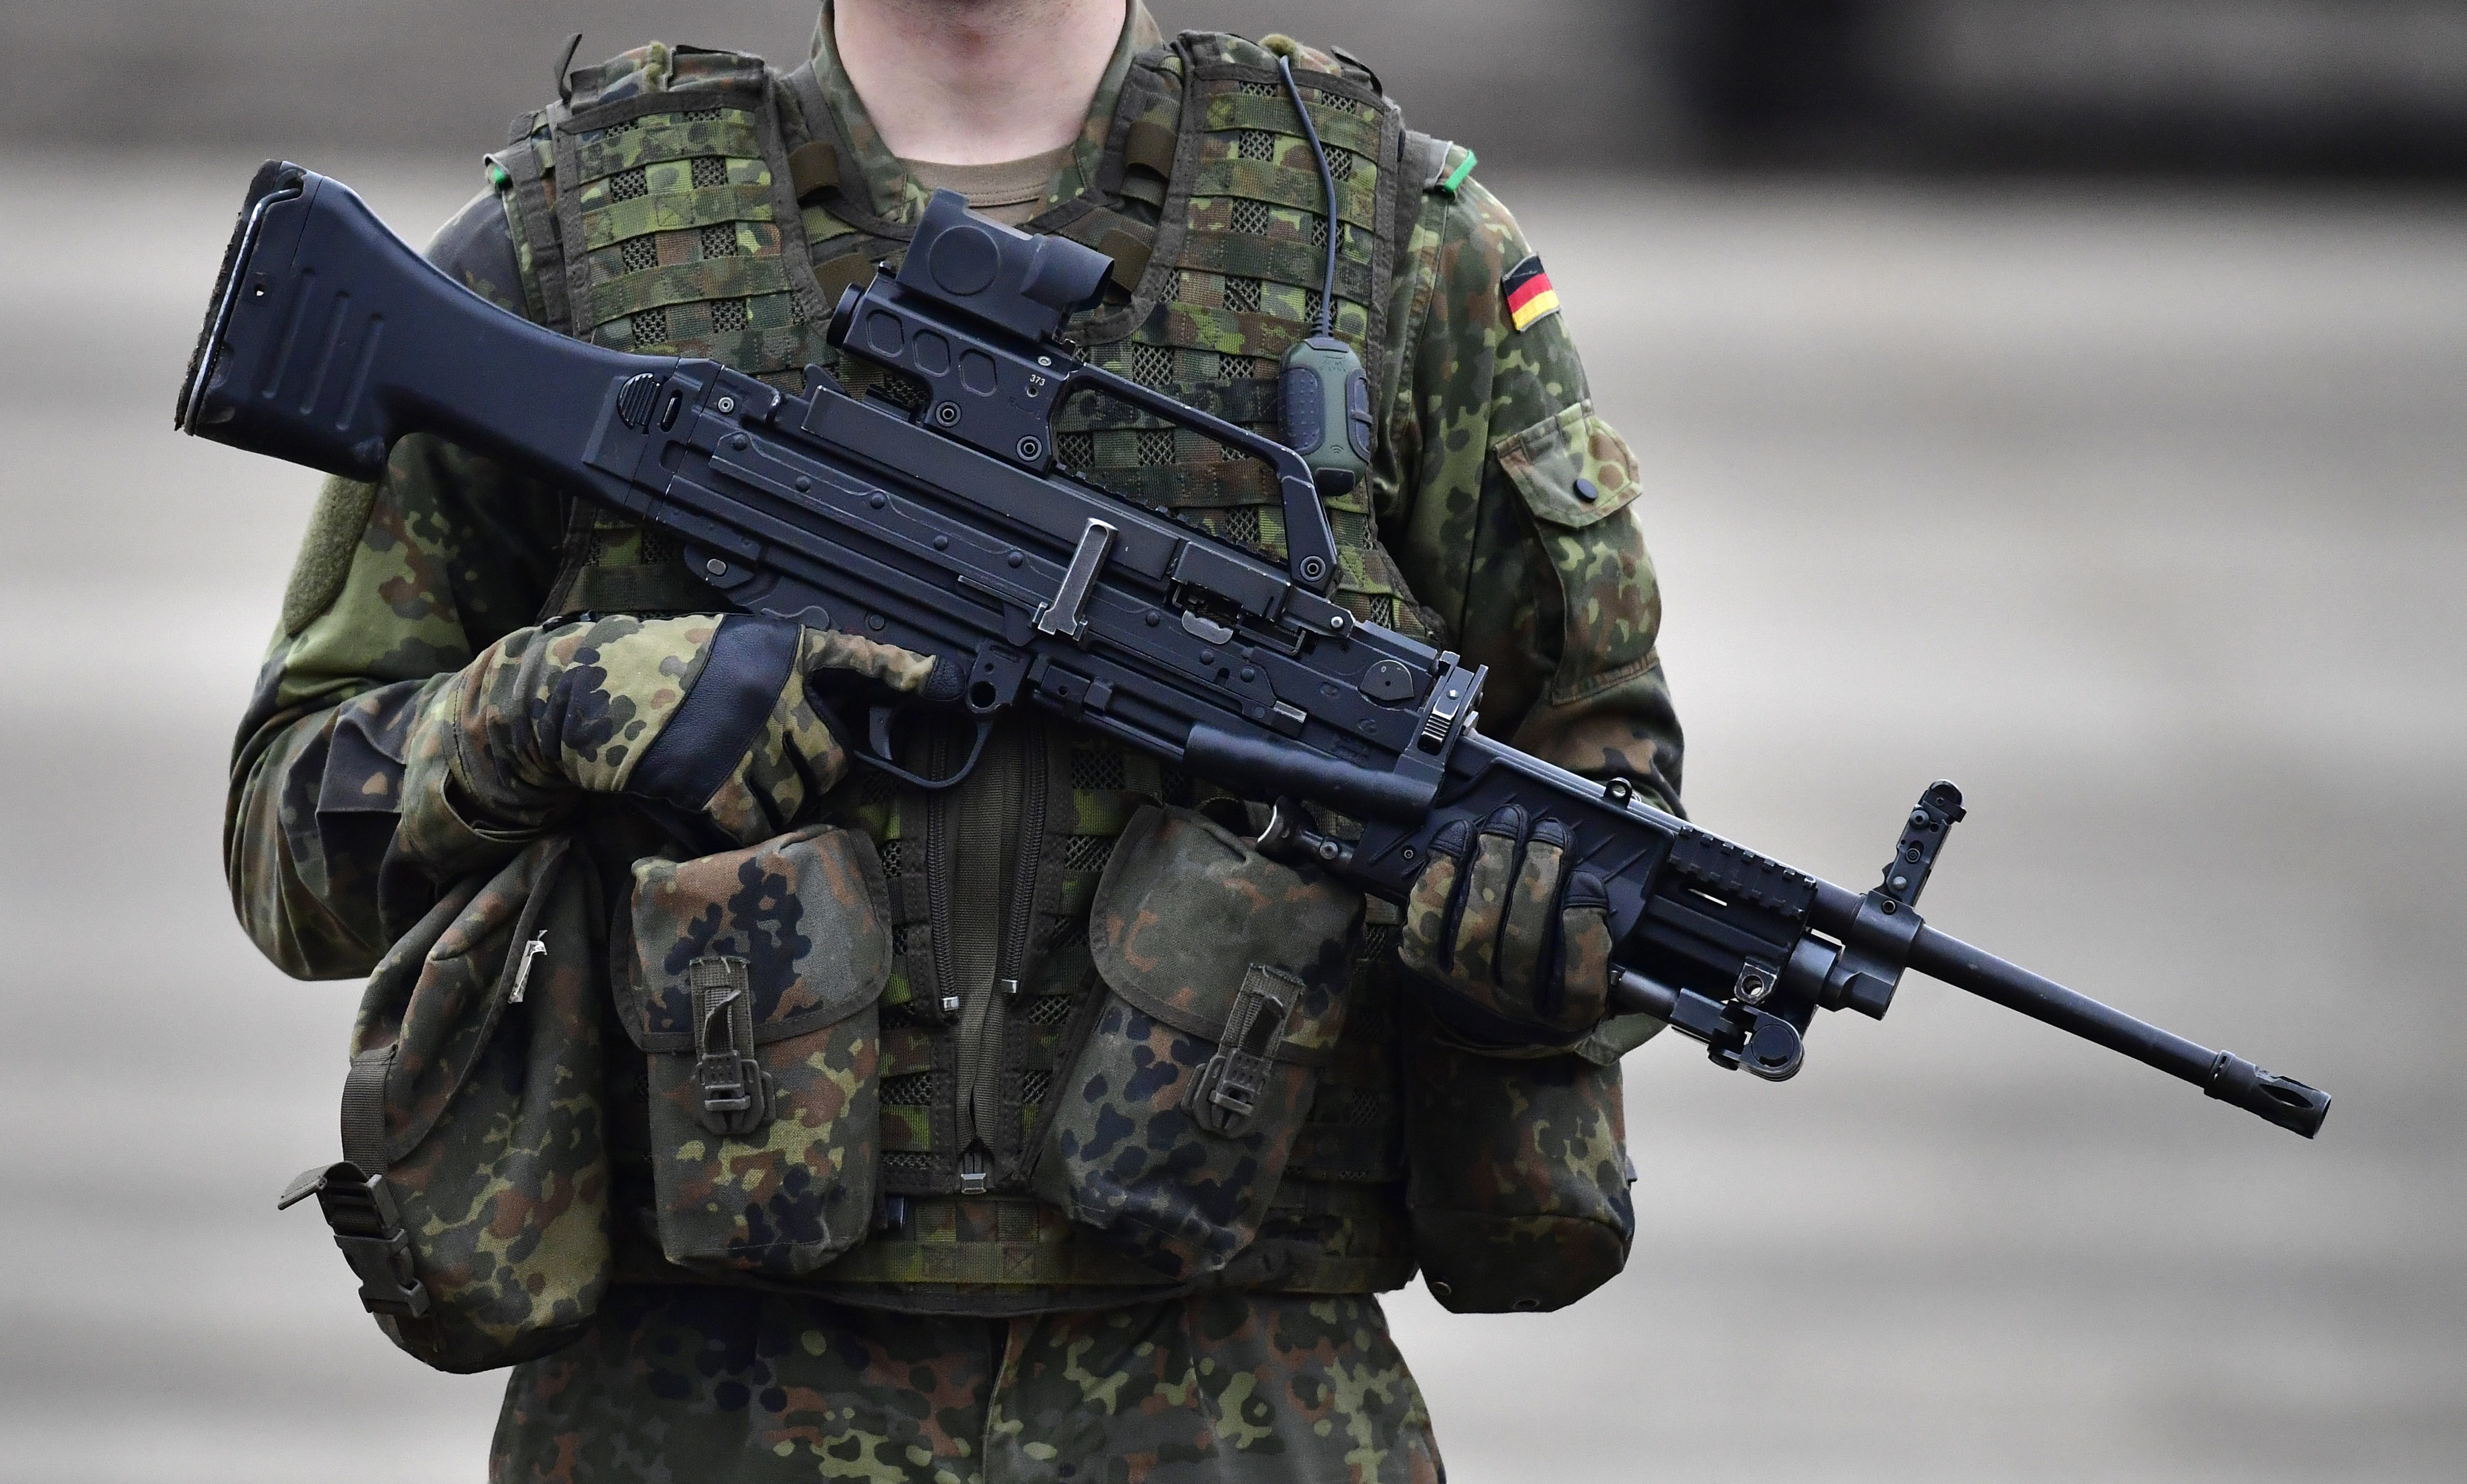 22-jähriger Soldat stirbt bei Schießübung in Bayern